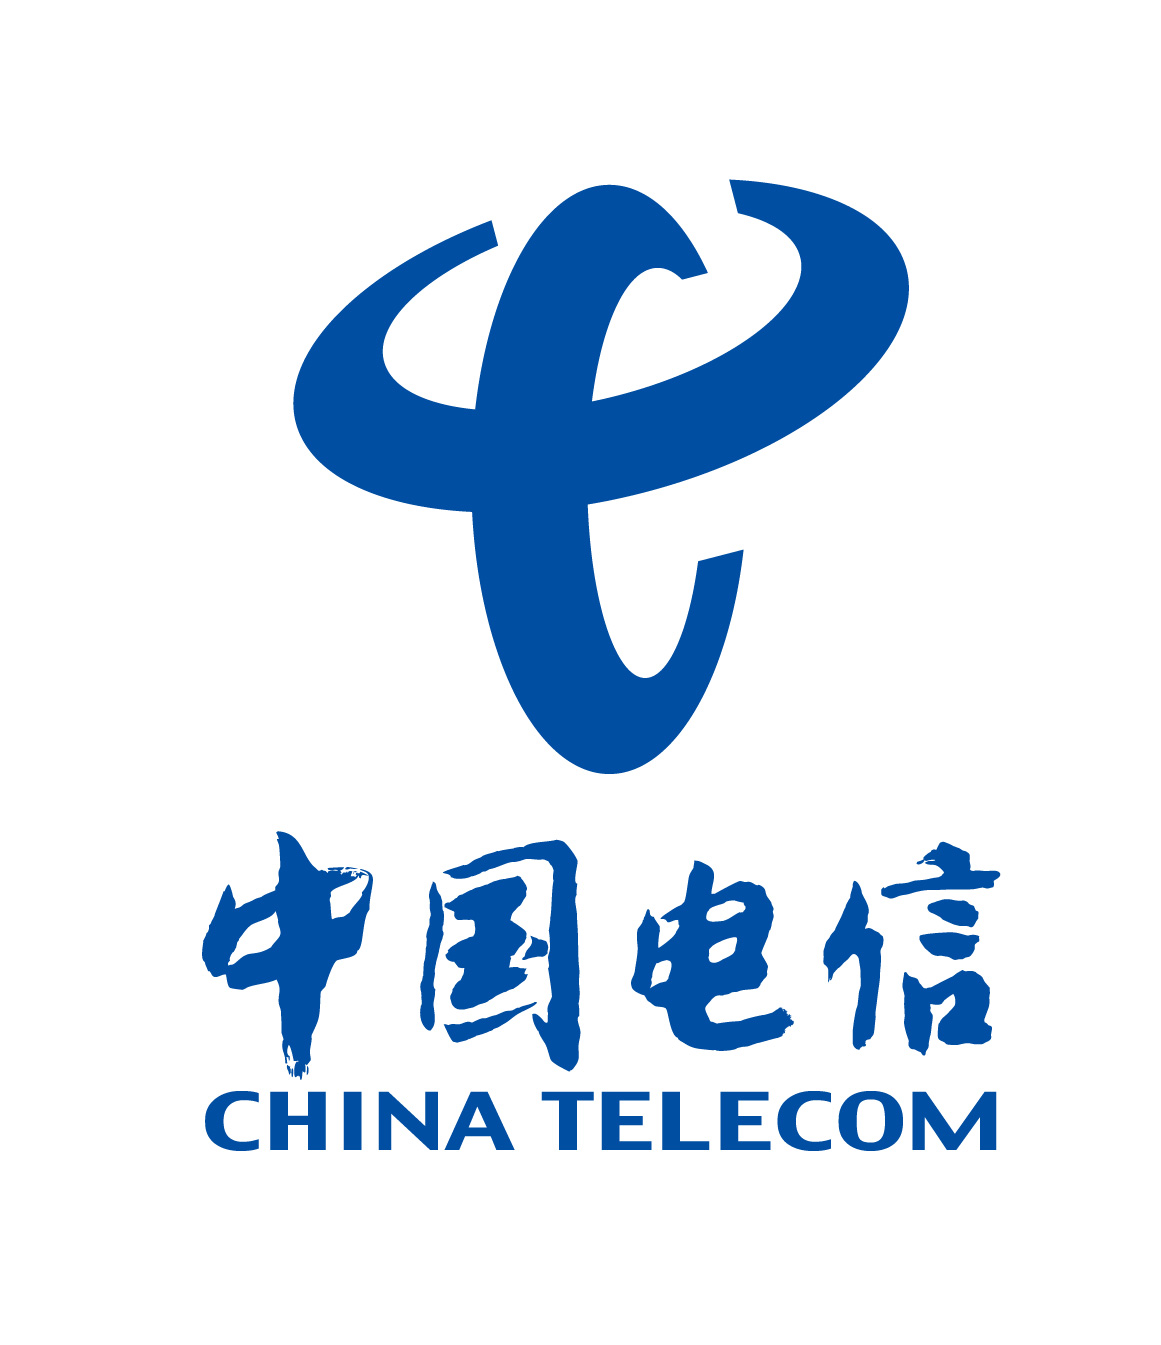 China Telecom (Macau) Company Limited